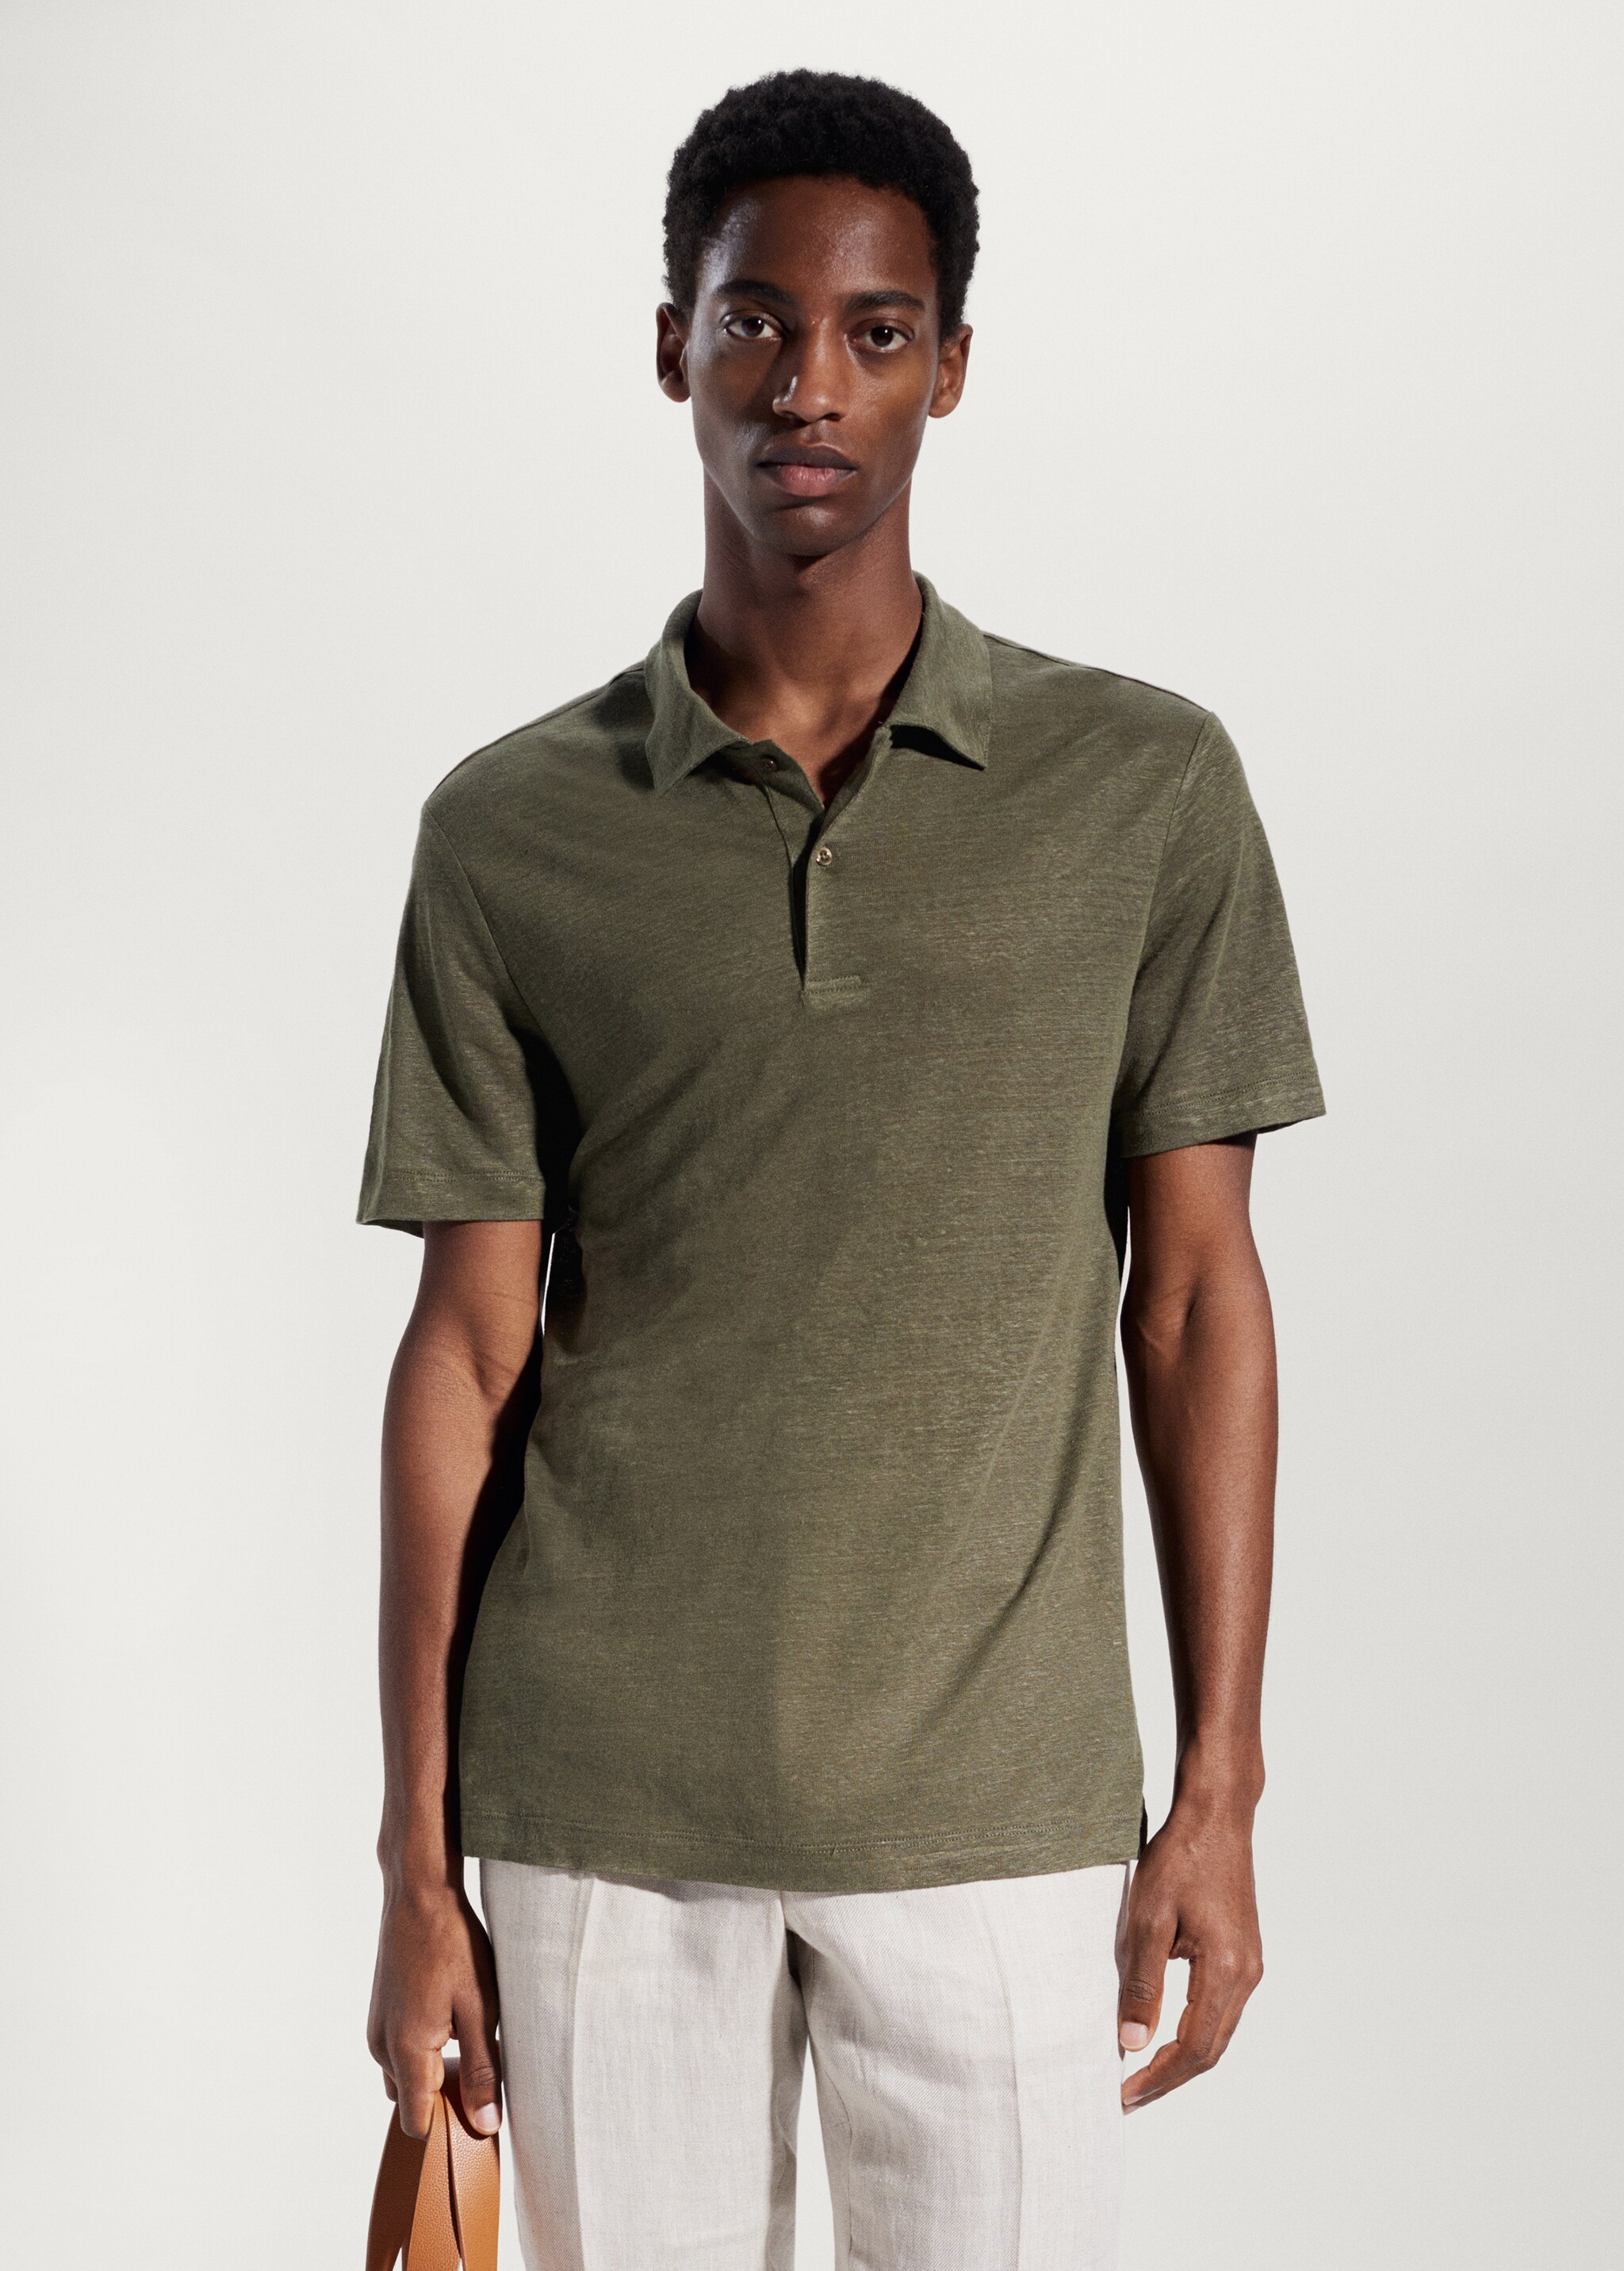 Slim fit 100% linen polo shirt - Medium plane